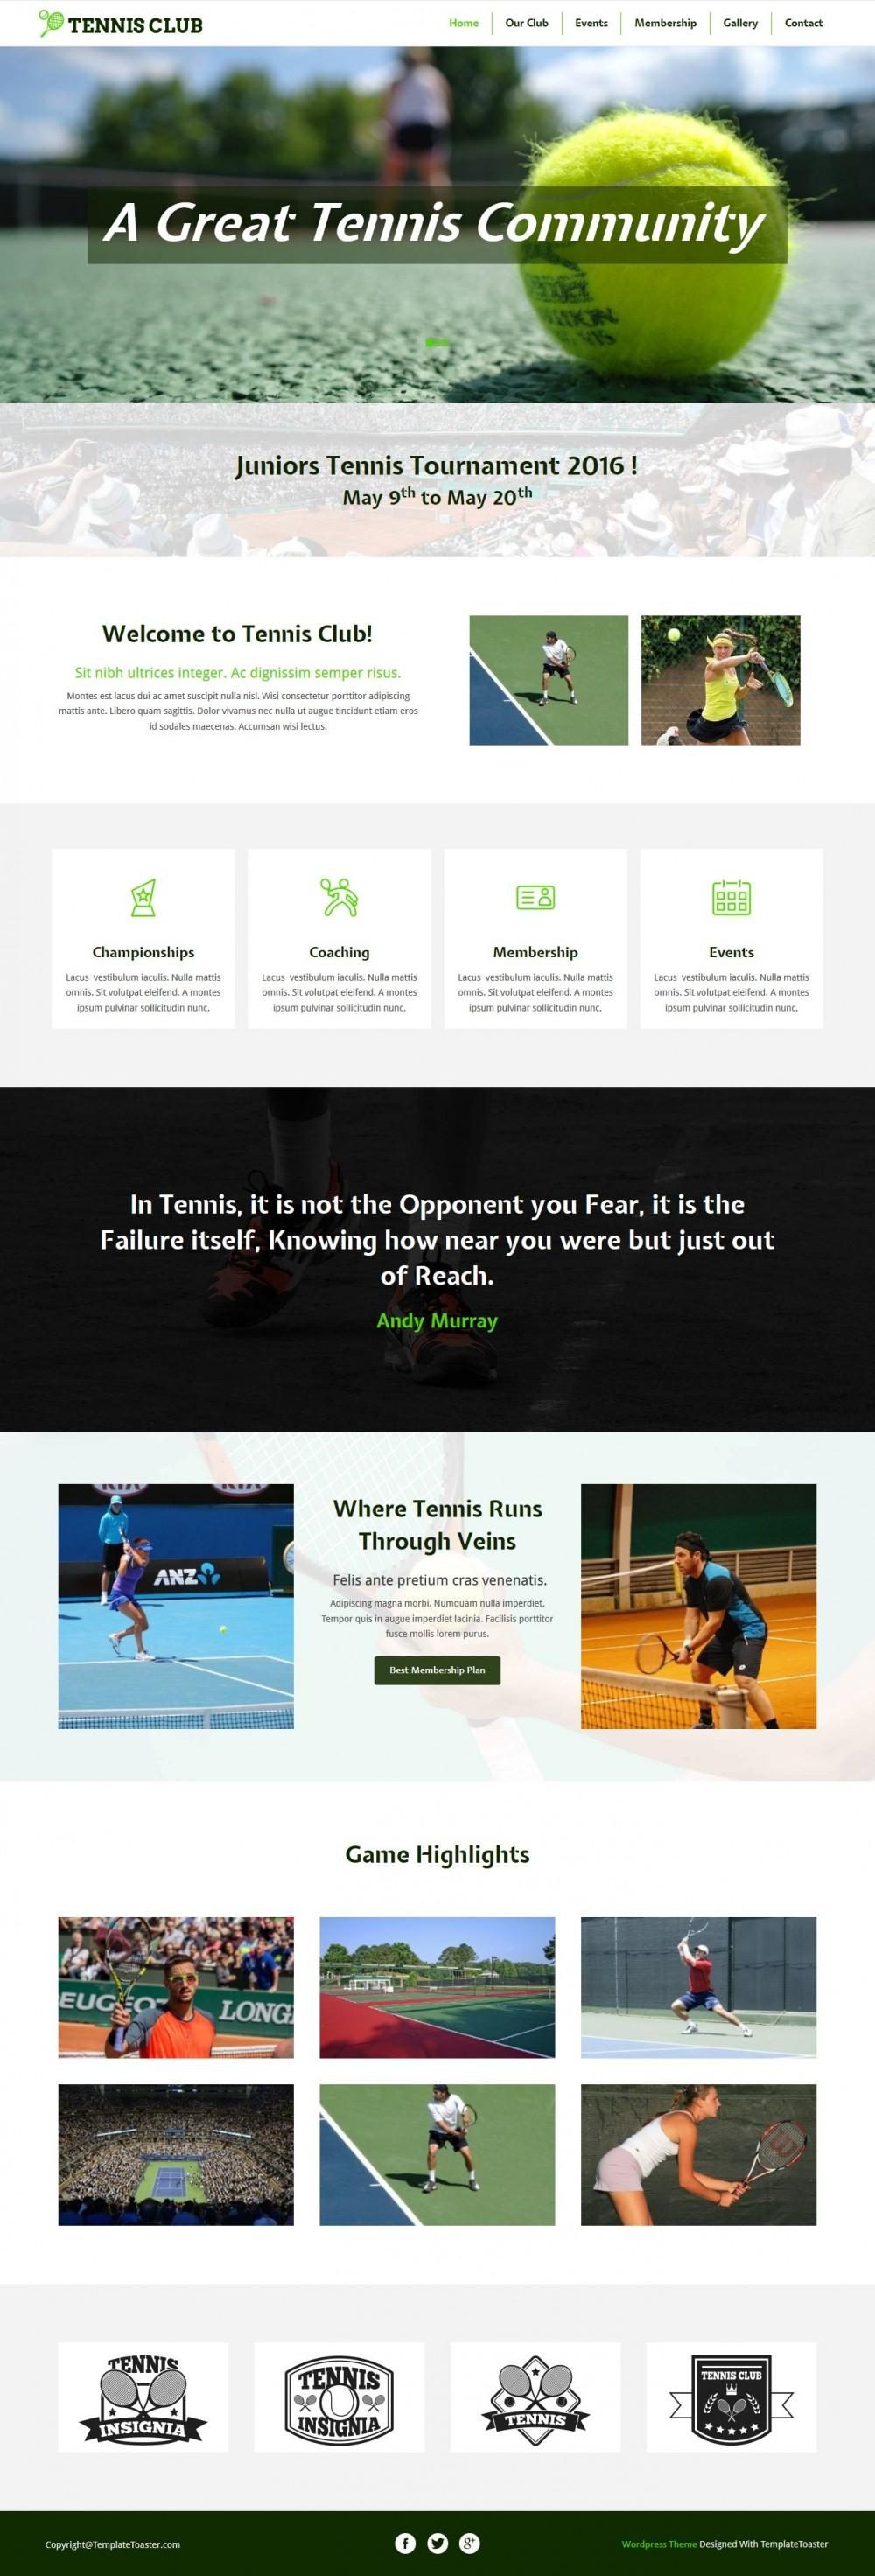 Tennis Club - Free WordPress Theme For Tennis/Badminton Club